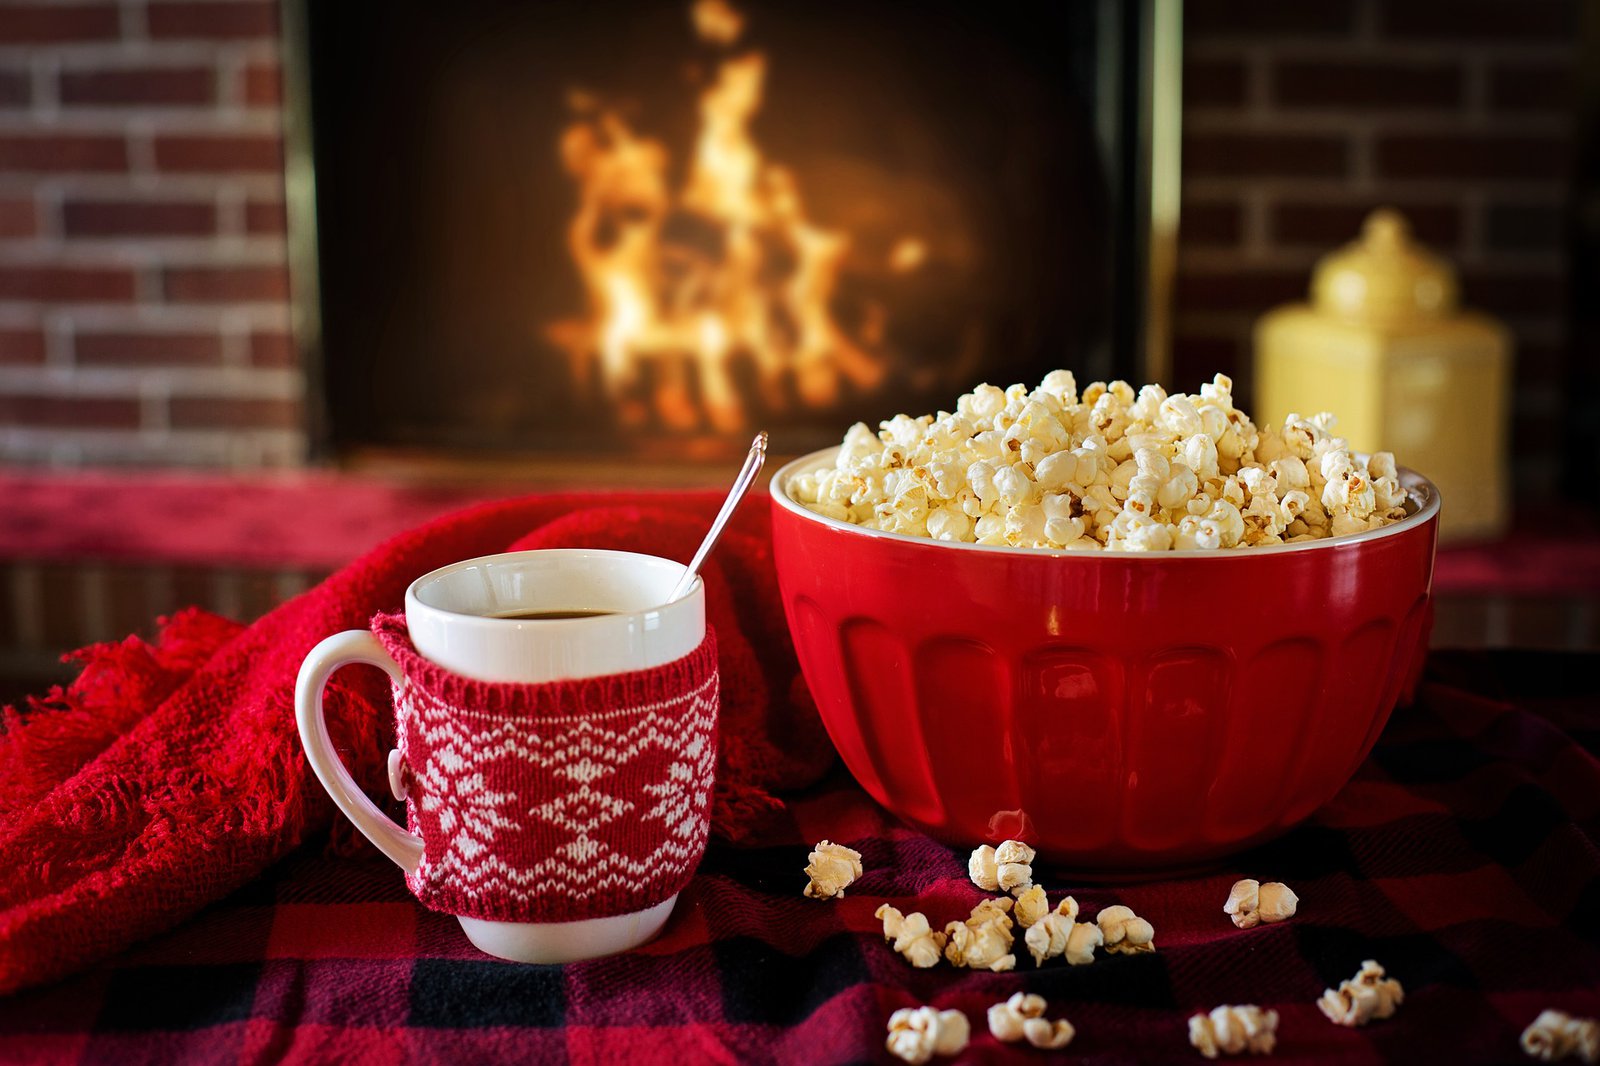 Eine weihnachtliche Tasse und eine rote Schale mit Popcorn, im Hintergrund lodert eine Flamme, in einem Kamin.